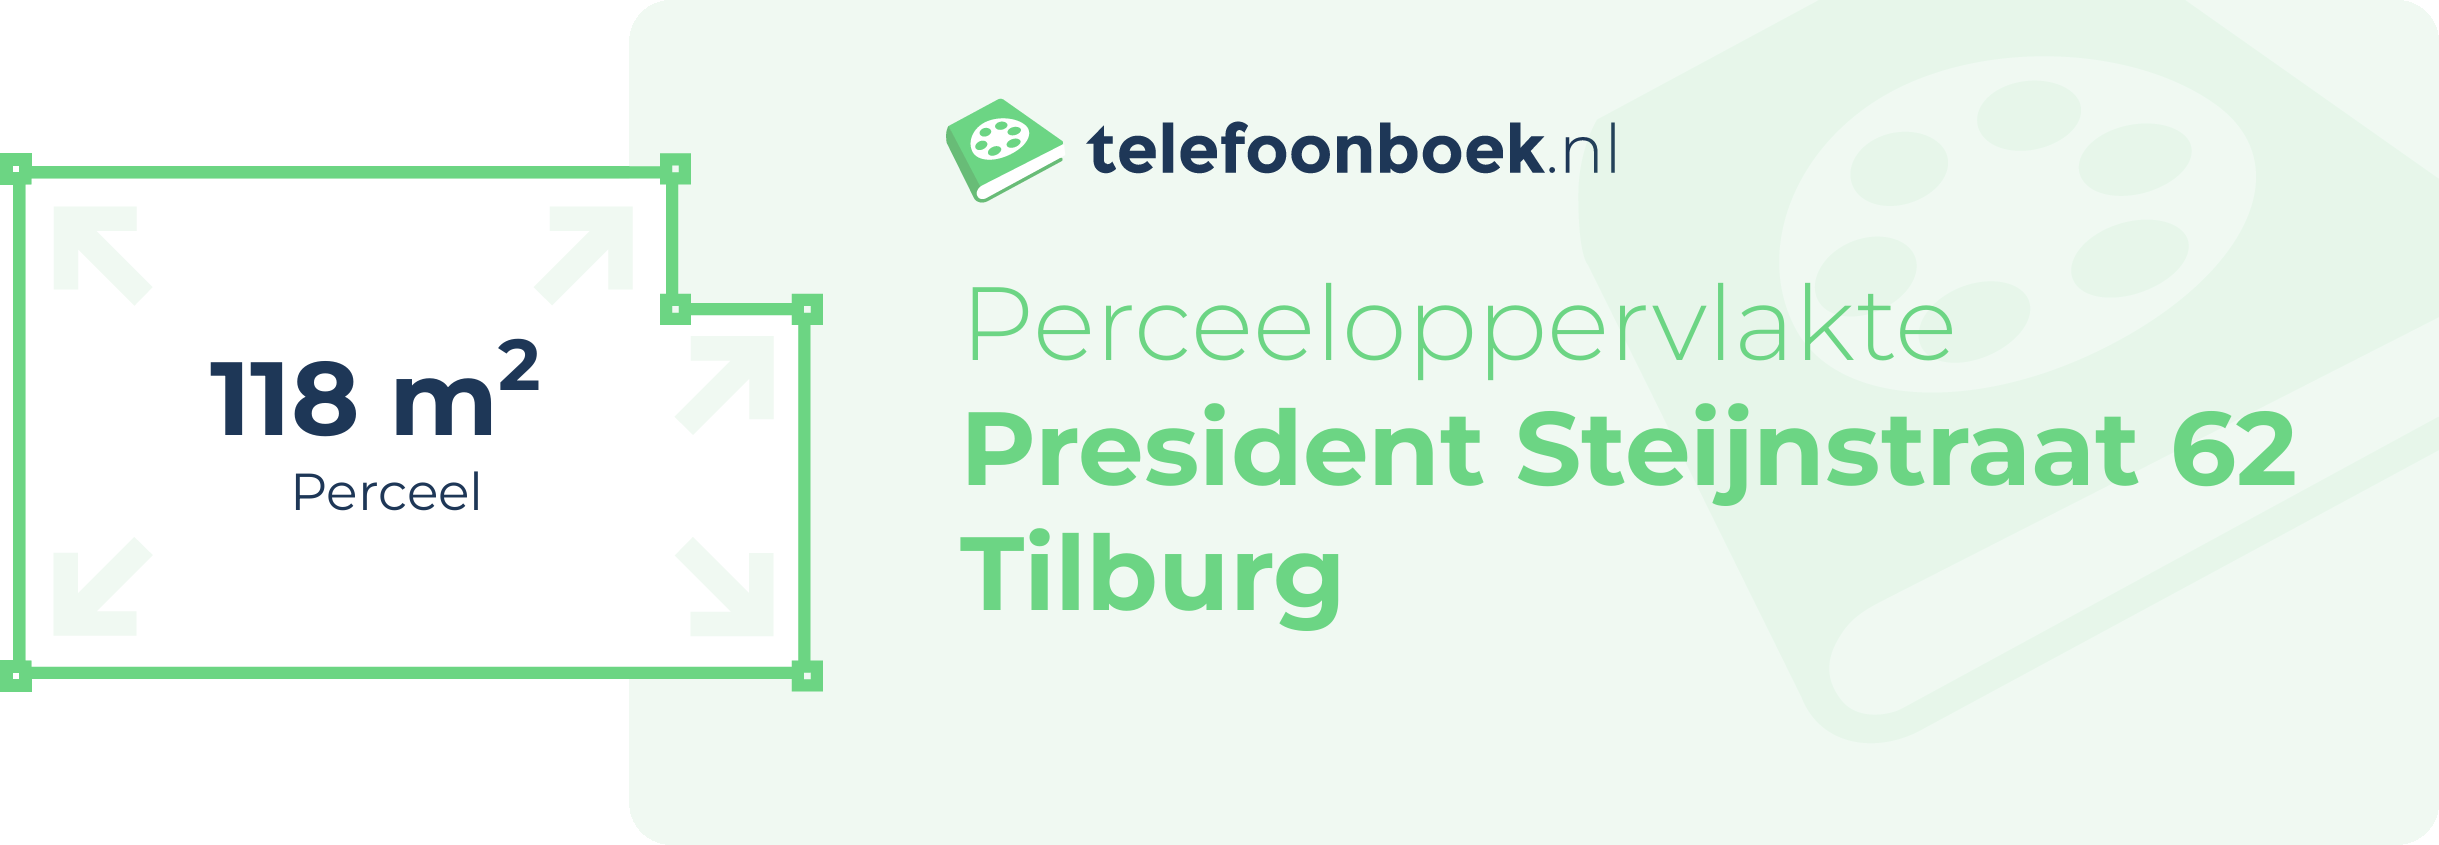 Perceeloppervlakte President Steijnstraat 62 Tilburg